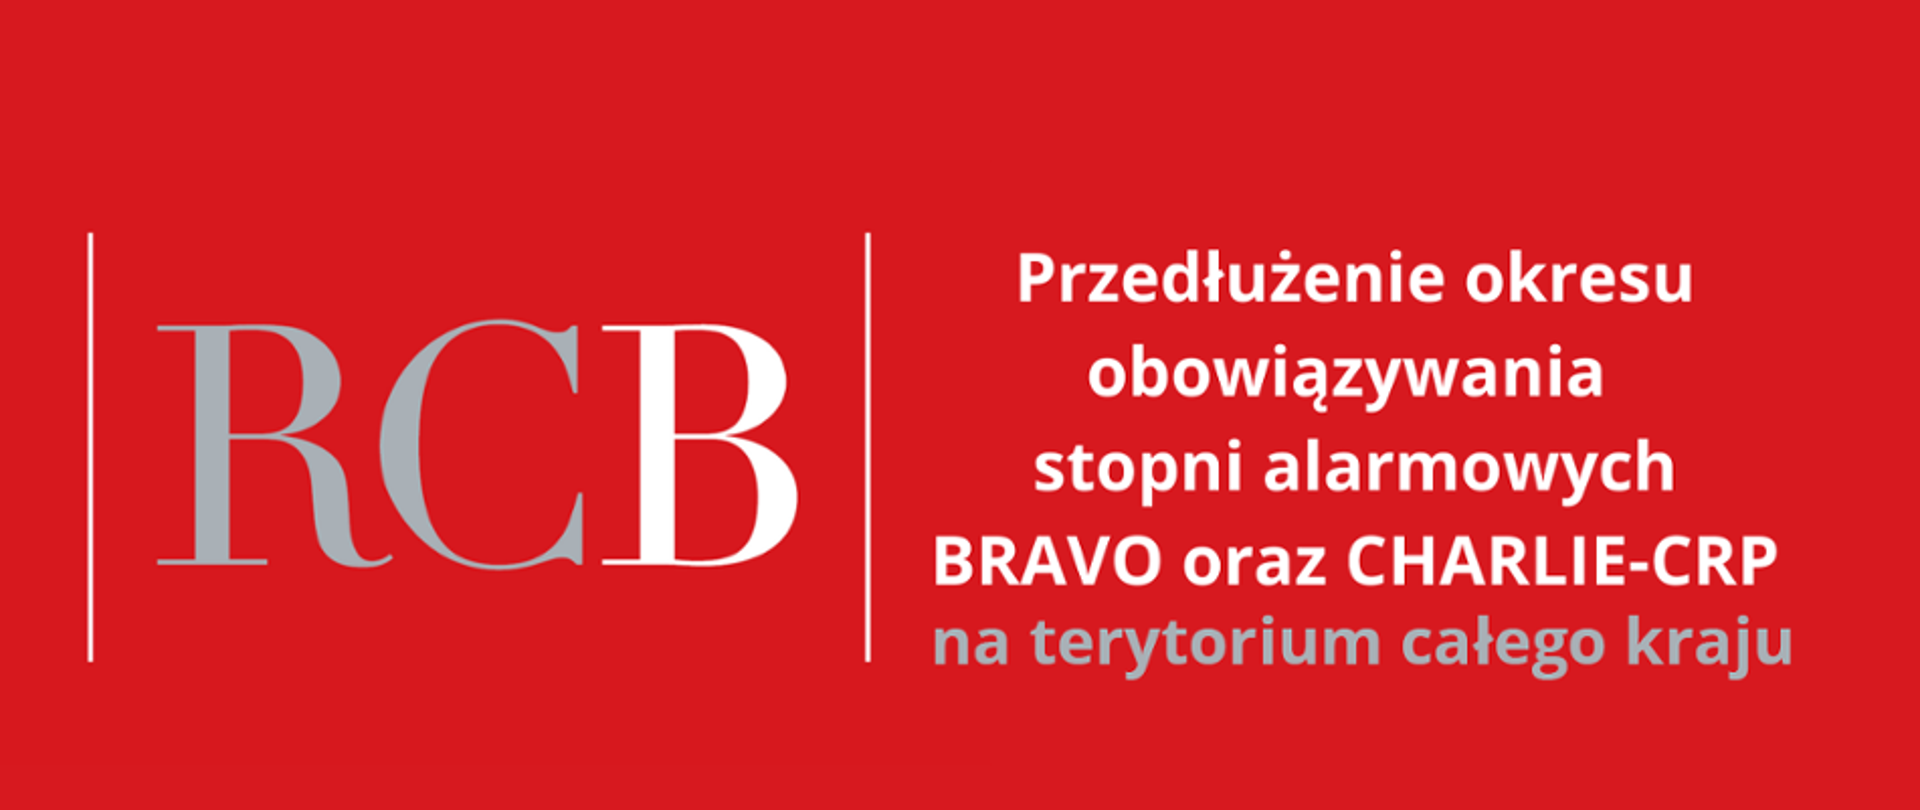 Na czerwonym tle biało błękitny tekst: Przedłużenie stopni alarmowych BRAVO i i CHARLIE na terytorium całego kraju.